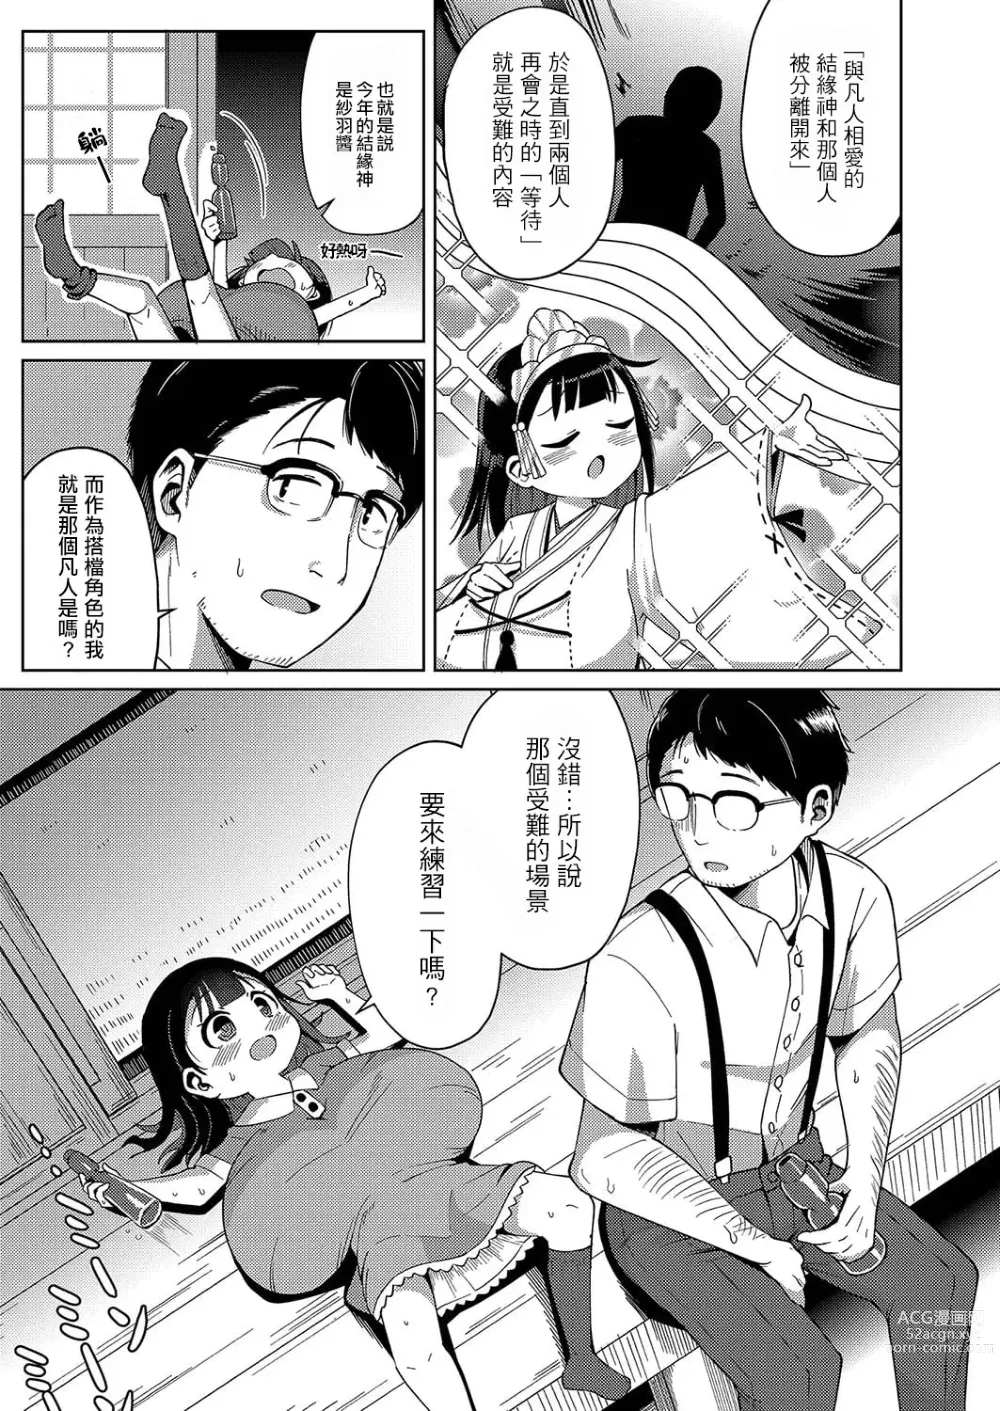 Page 6 of manga Kagura